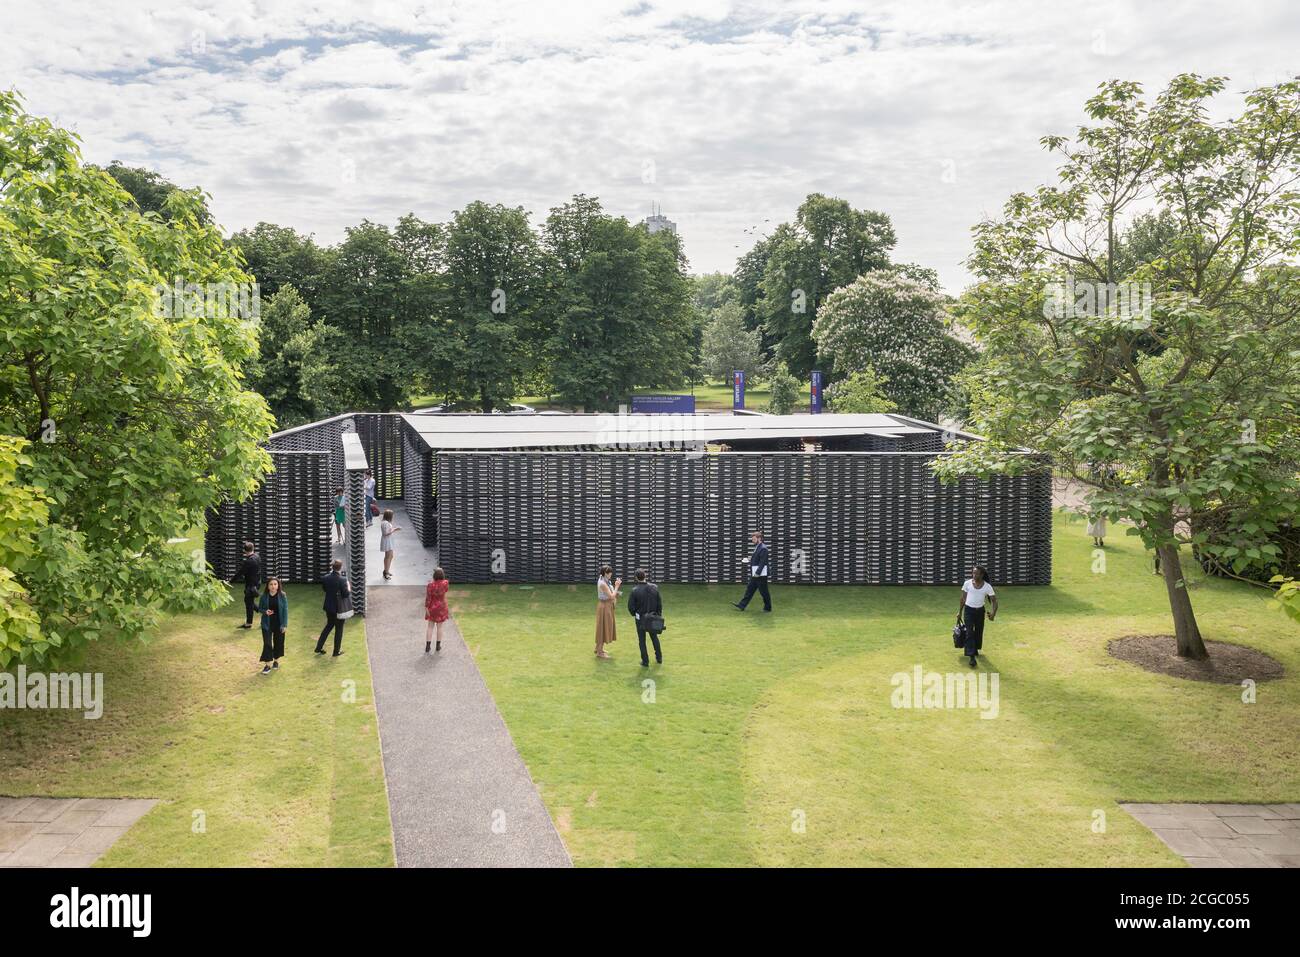 Serpentine Pavilion 2018 del arquitecto mexicano Frida Escobedo, instalado frente a la Serpentine Gallery, Kensington Gardens, Londres, Reino Unido. Foto de stock